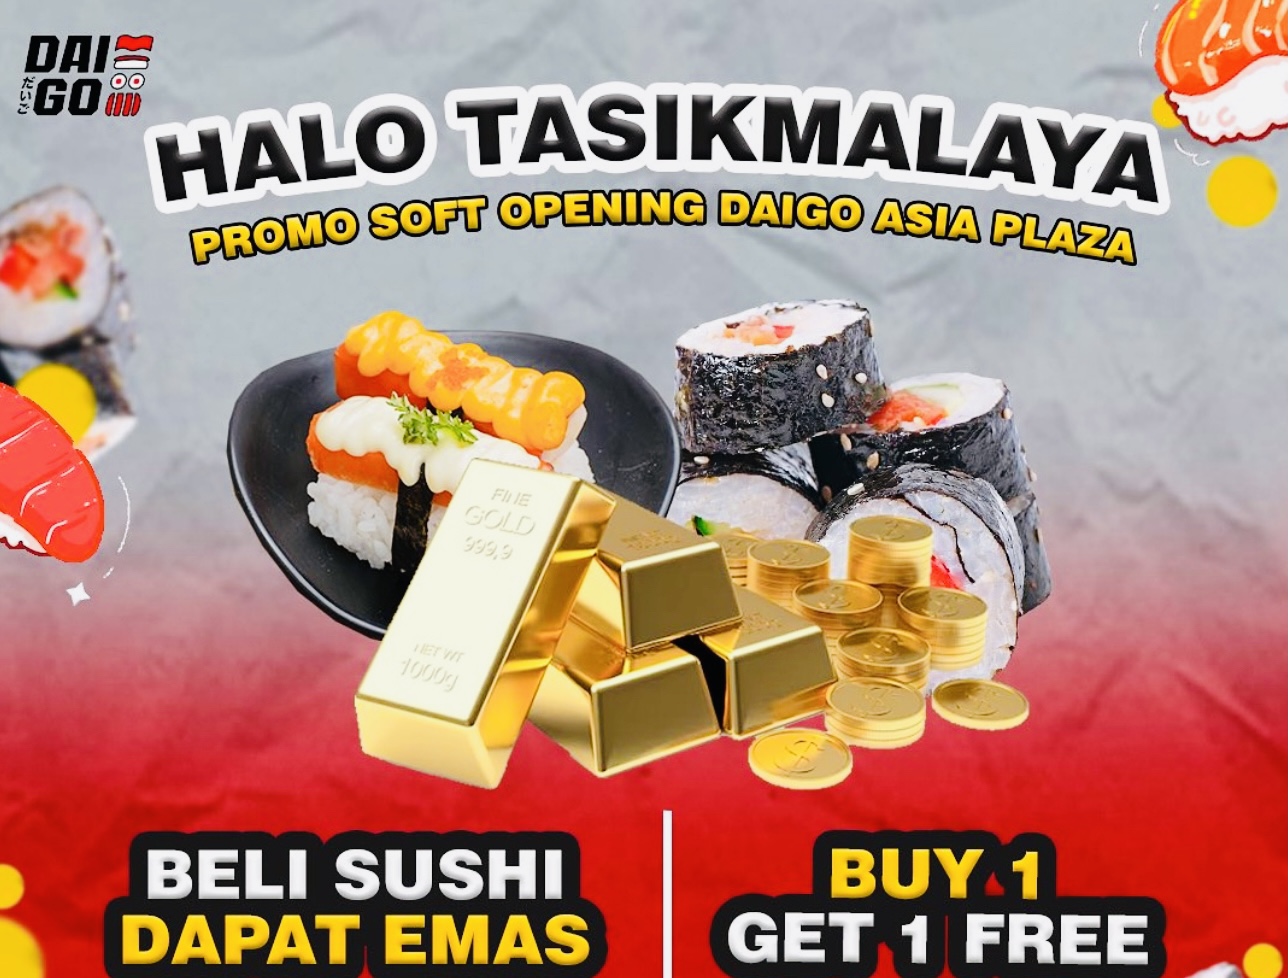 Asyiiik Beli Sushi Dapat Emas, Cuma Ada di Daigo Plaza Asia, Catat Waktunya! Kuliner Kota Tasikmalaya Mantap!